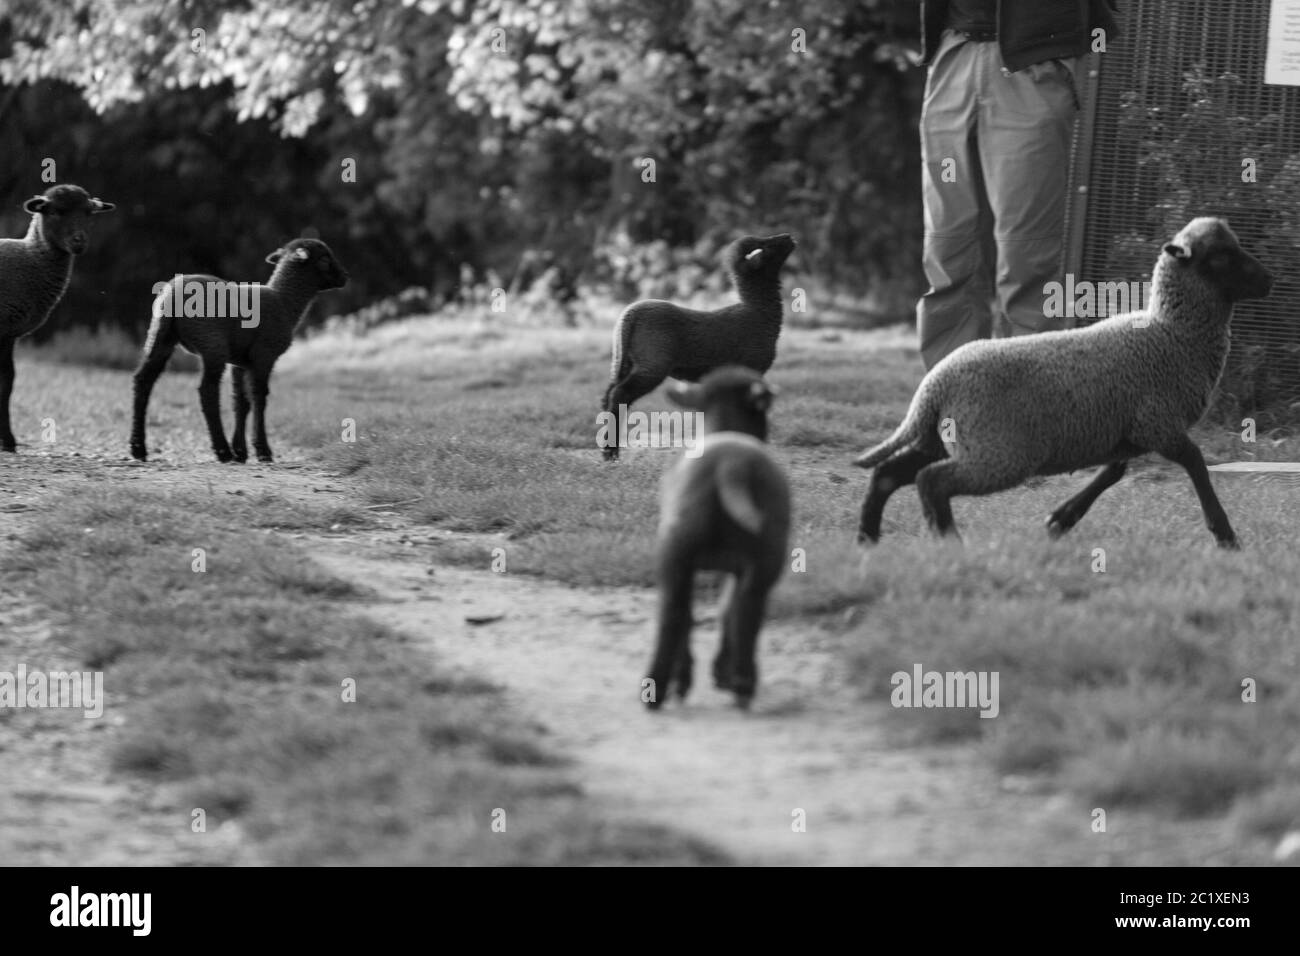 Photographie noir blanc de mouton brun sur un pré. Campagne anglaise. Photographie de la faune. Un agneau regardant un homme. Banque D'Images